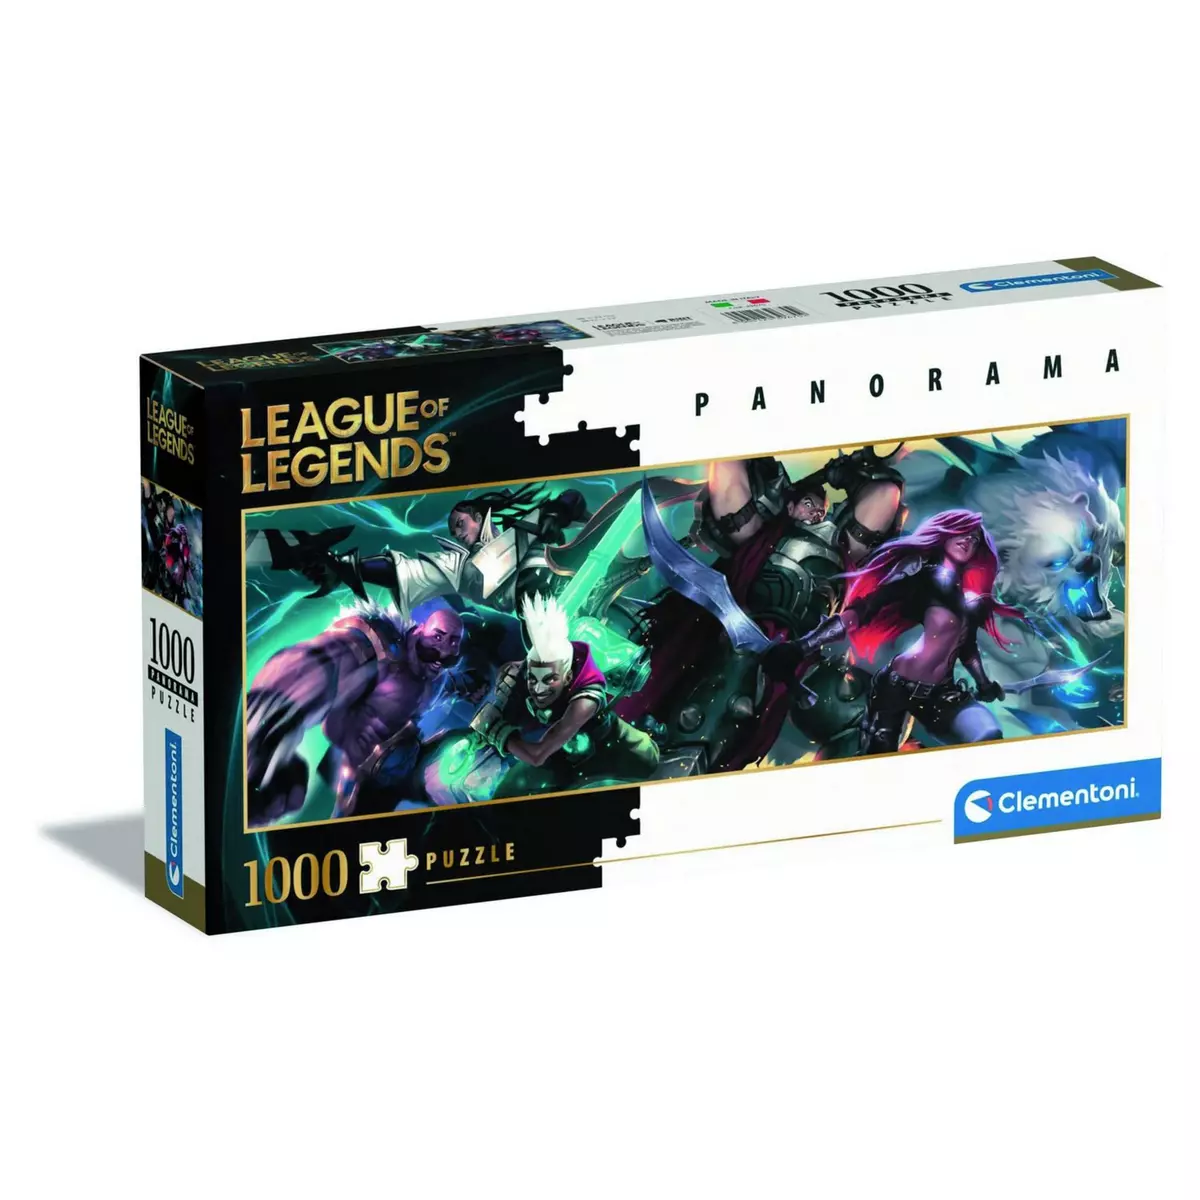 CLEMENTONI Puzzle panorama 1000 pièces - League of legends